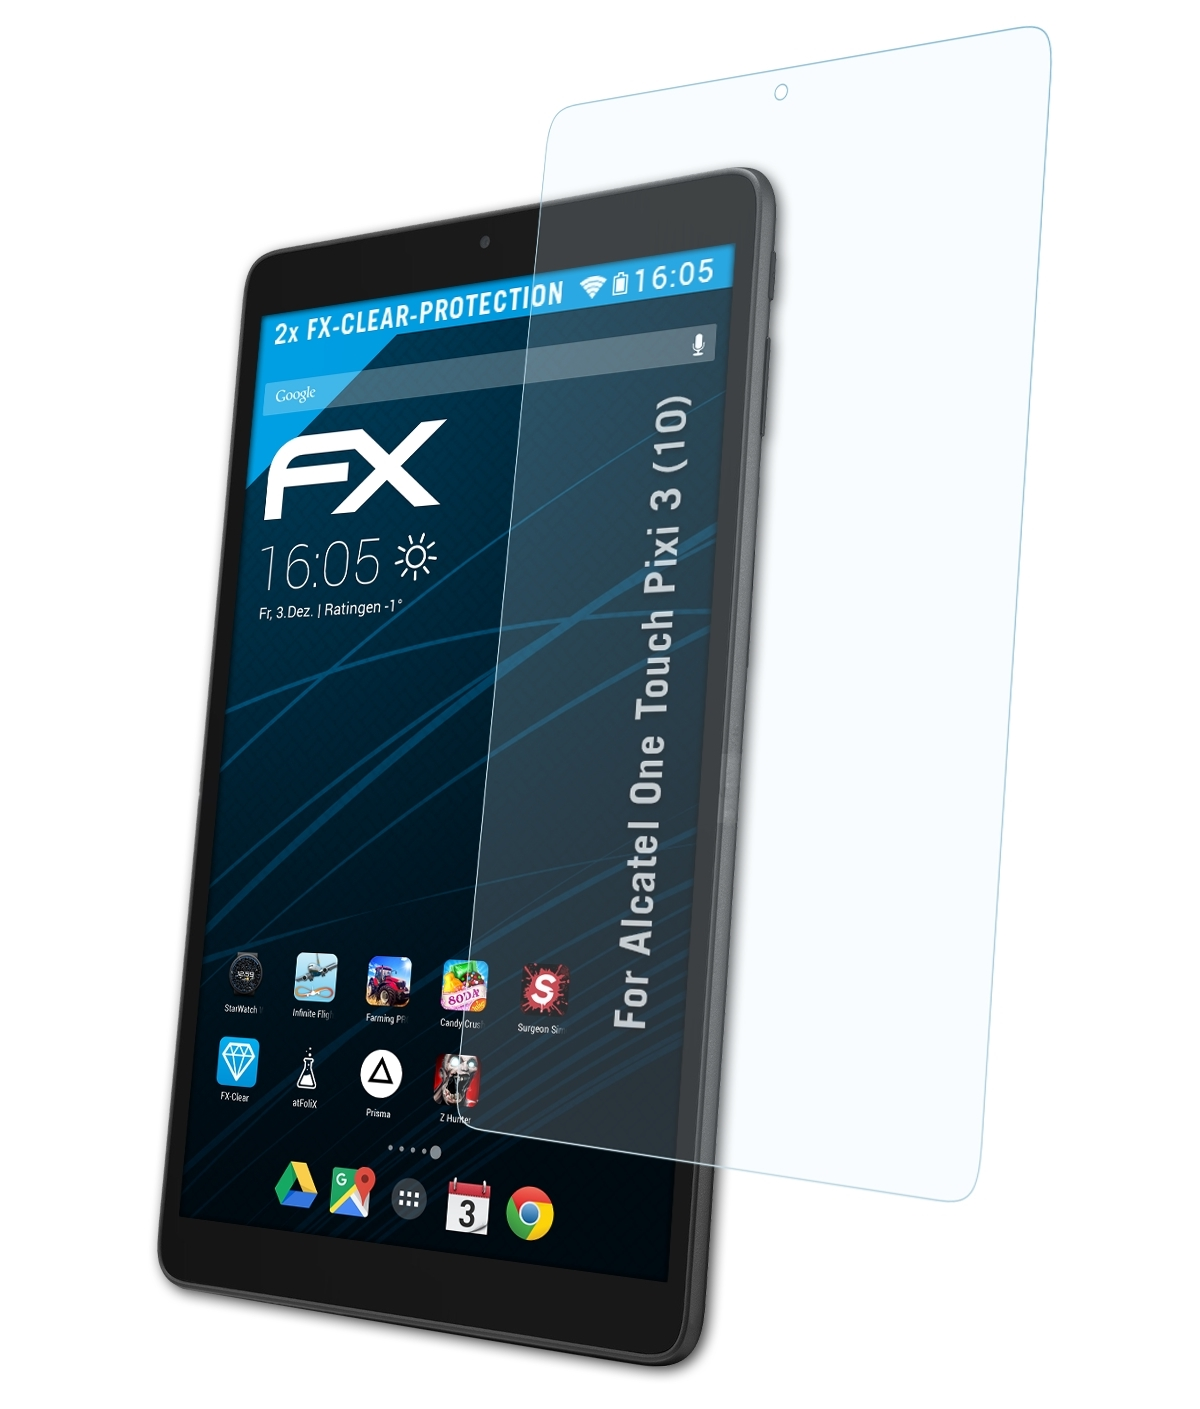 One 2x (10)) Alcatel ATFOLIX Pixi FX-Clear Displayschutz(für 3 Touch